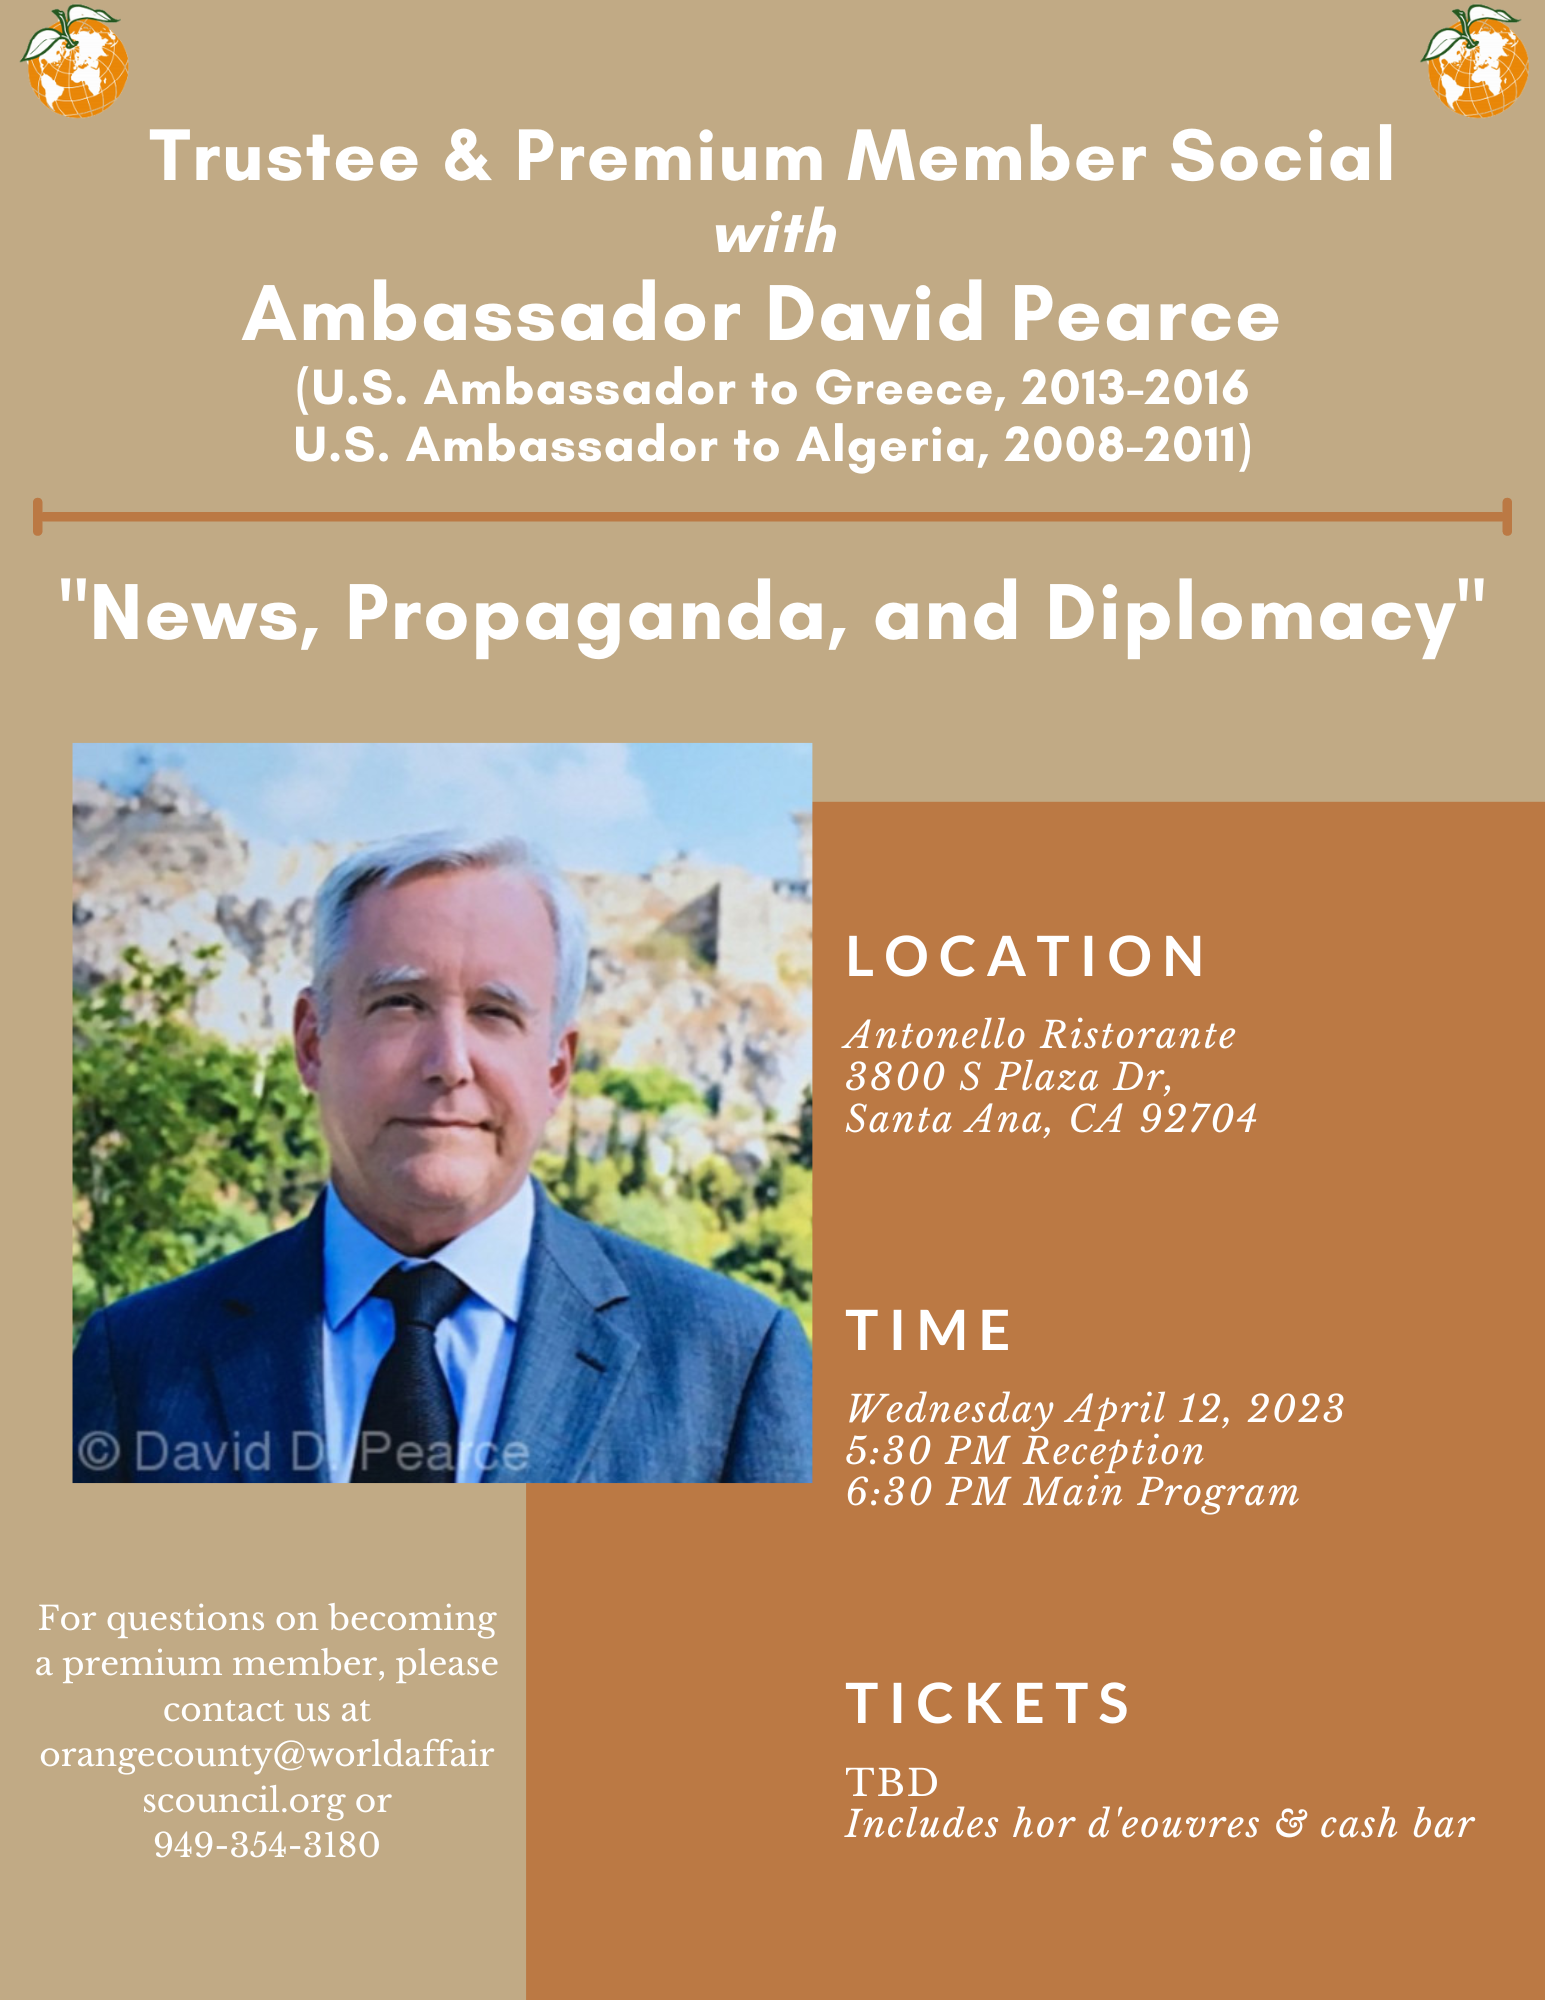 "News, Propaganda, and Diplomacy" with Amb. David Pearce